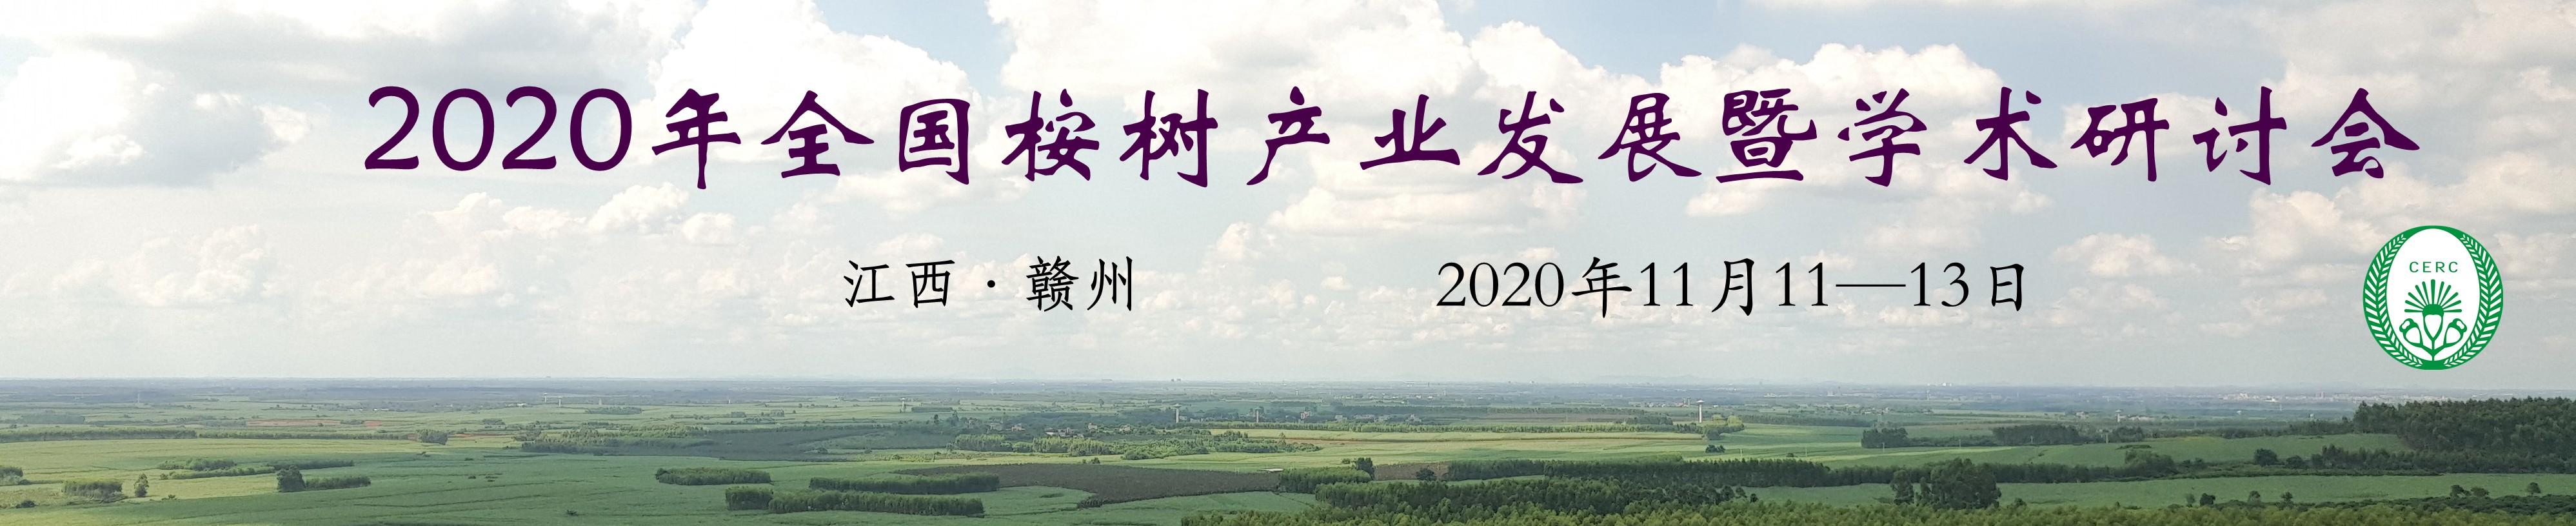 2020年全国桉树产业发展暨学术研讨会